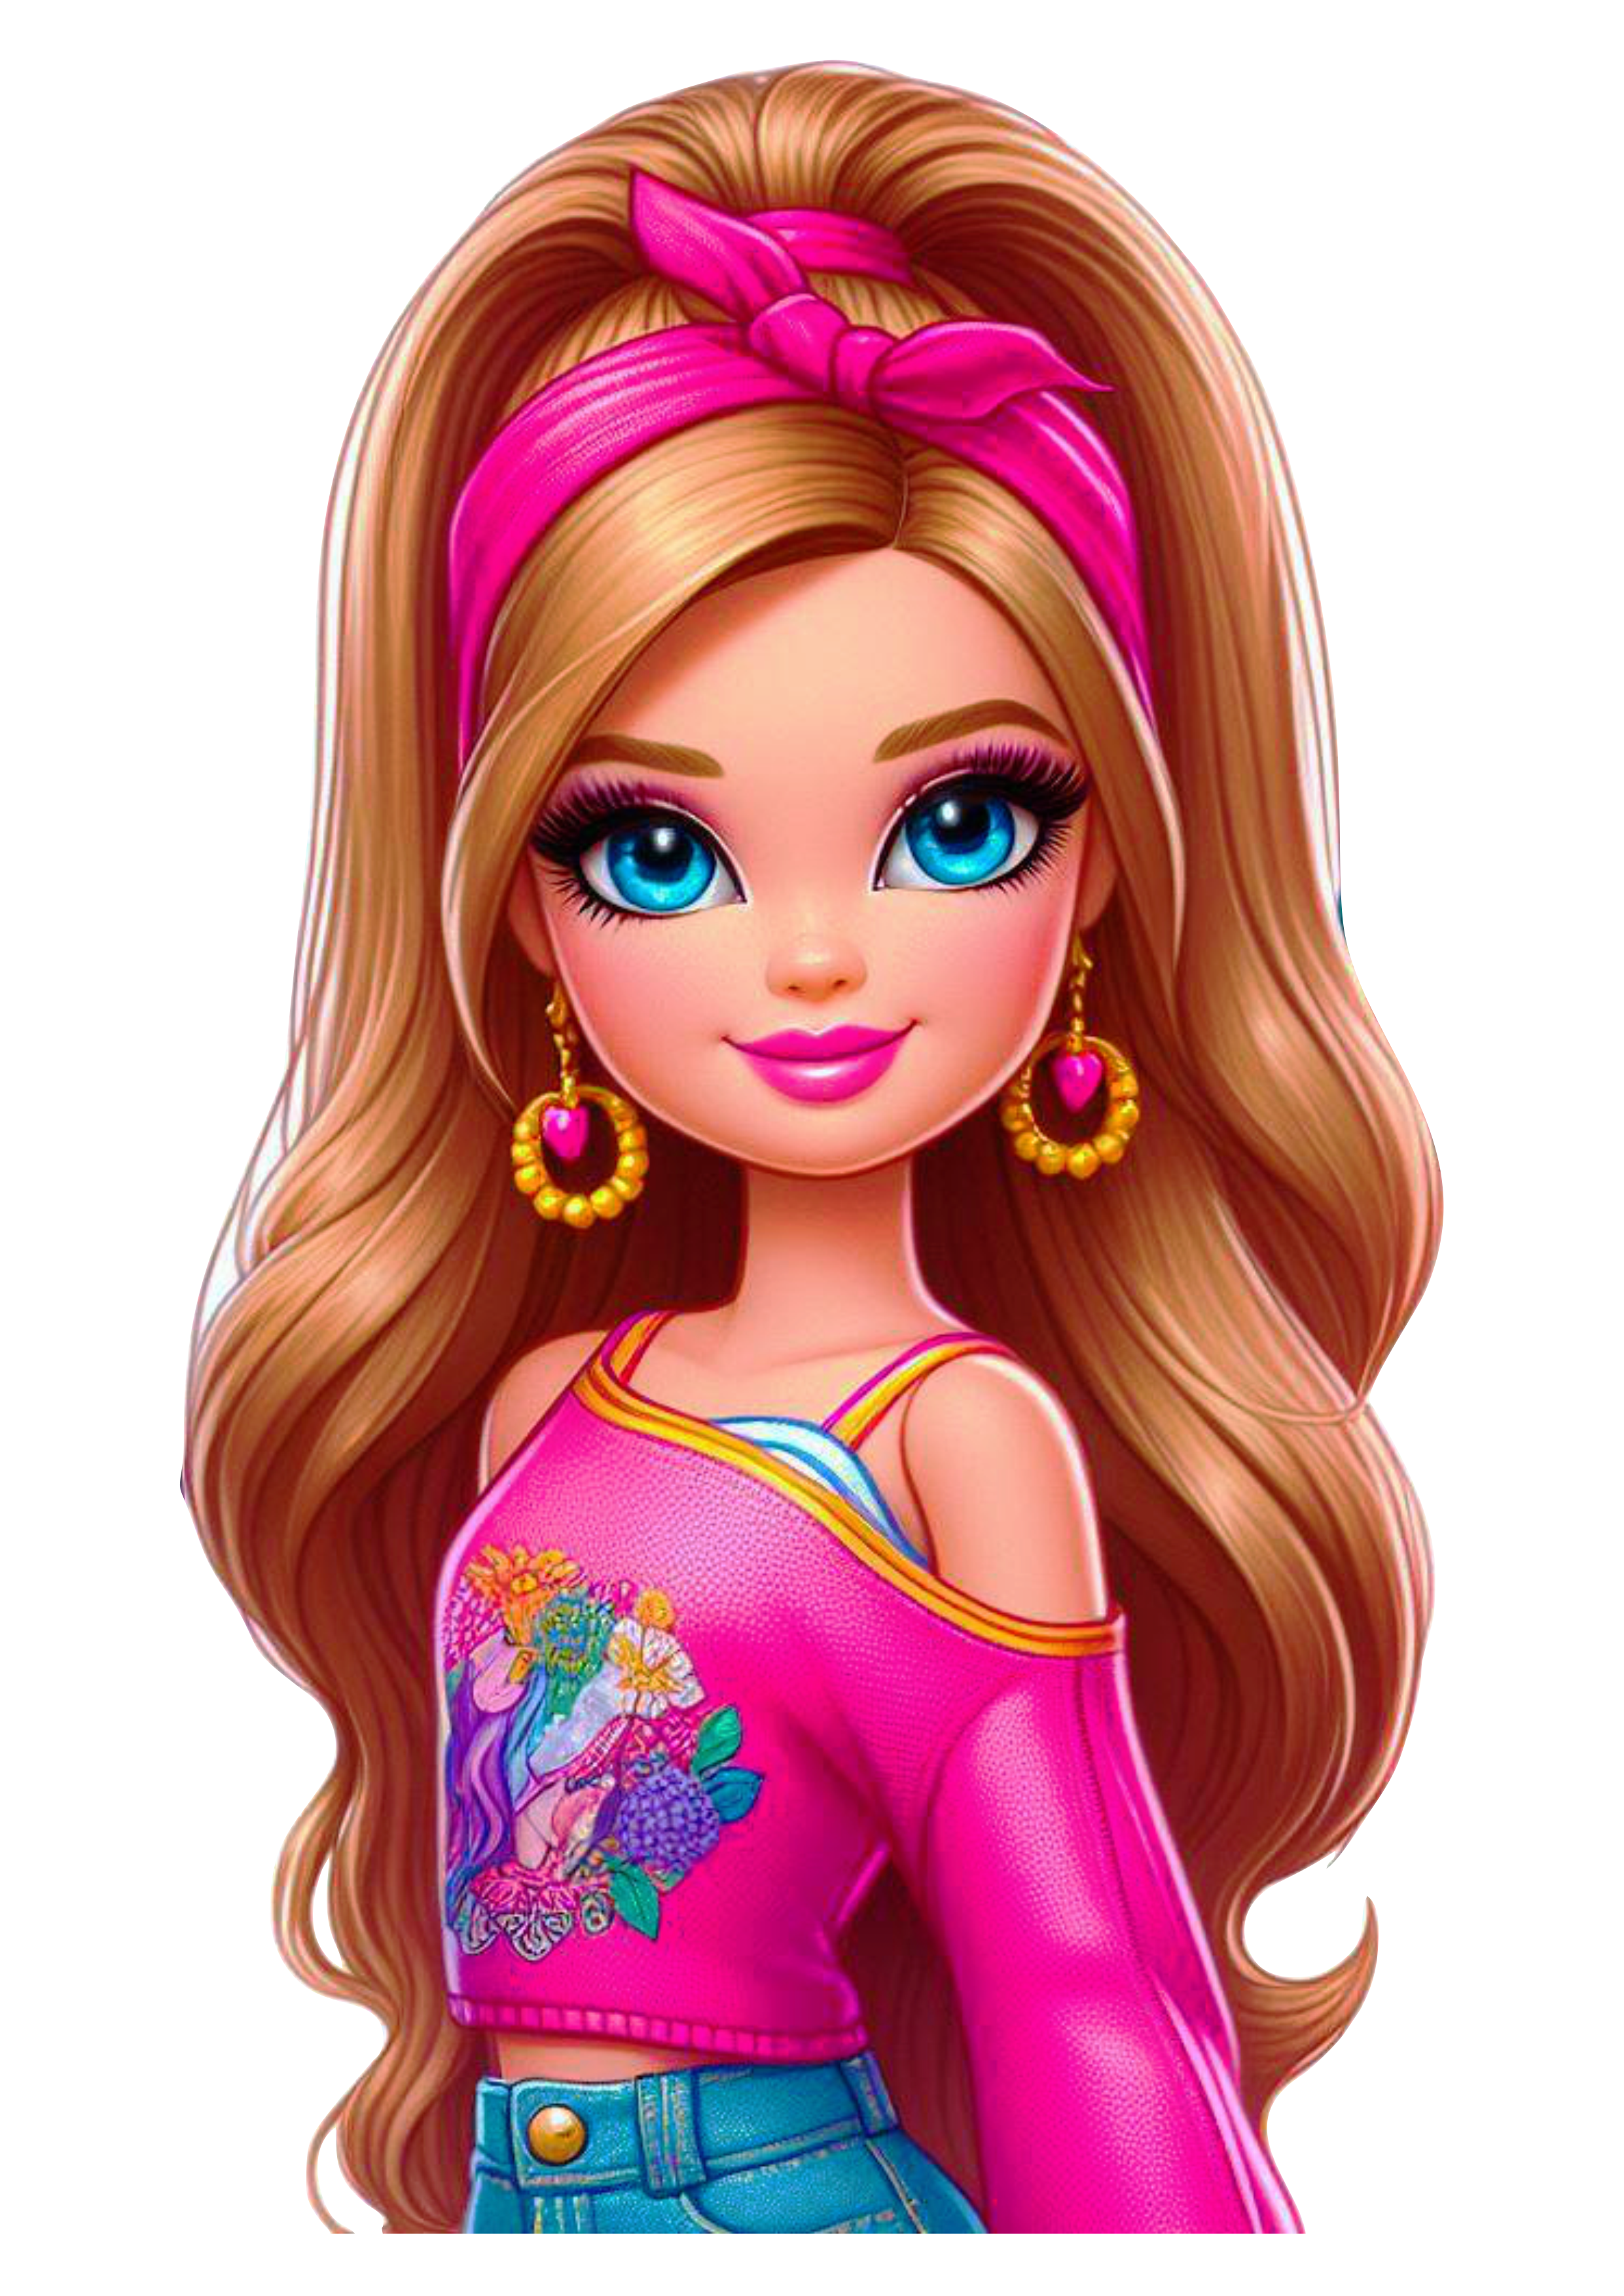 Imagens grátis boneca Barbie com fundo transparente png fashion adolescente